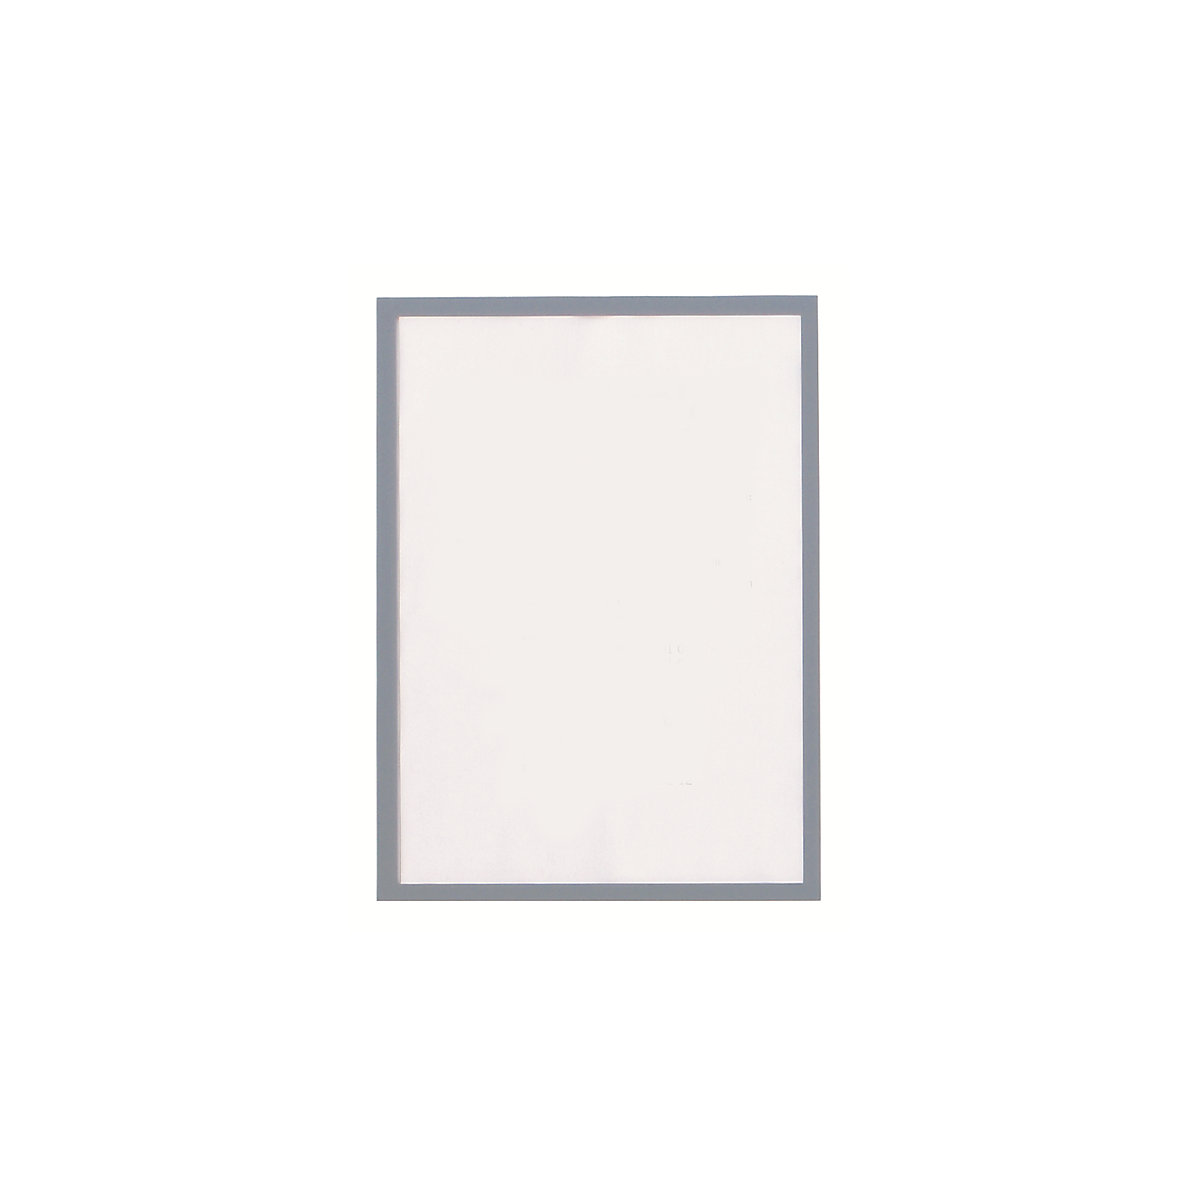 magnetofix vision panel – magnetoplan, format A4, pack of 5, grey frame-6